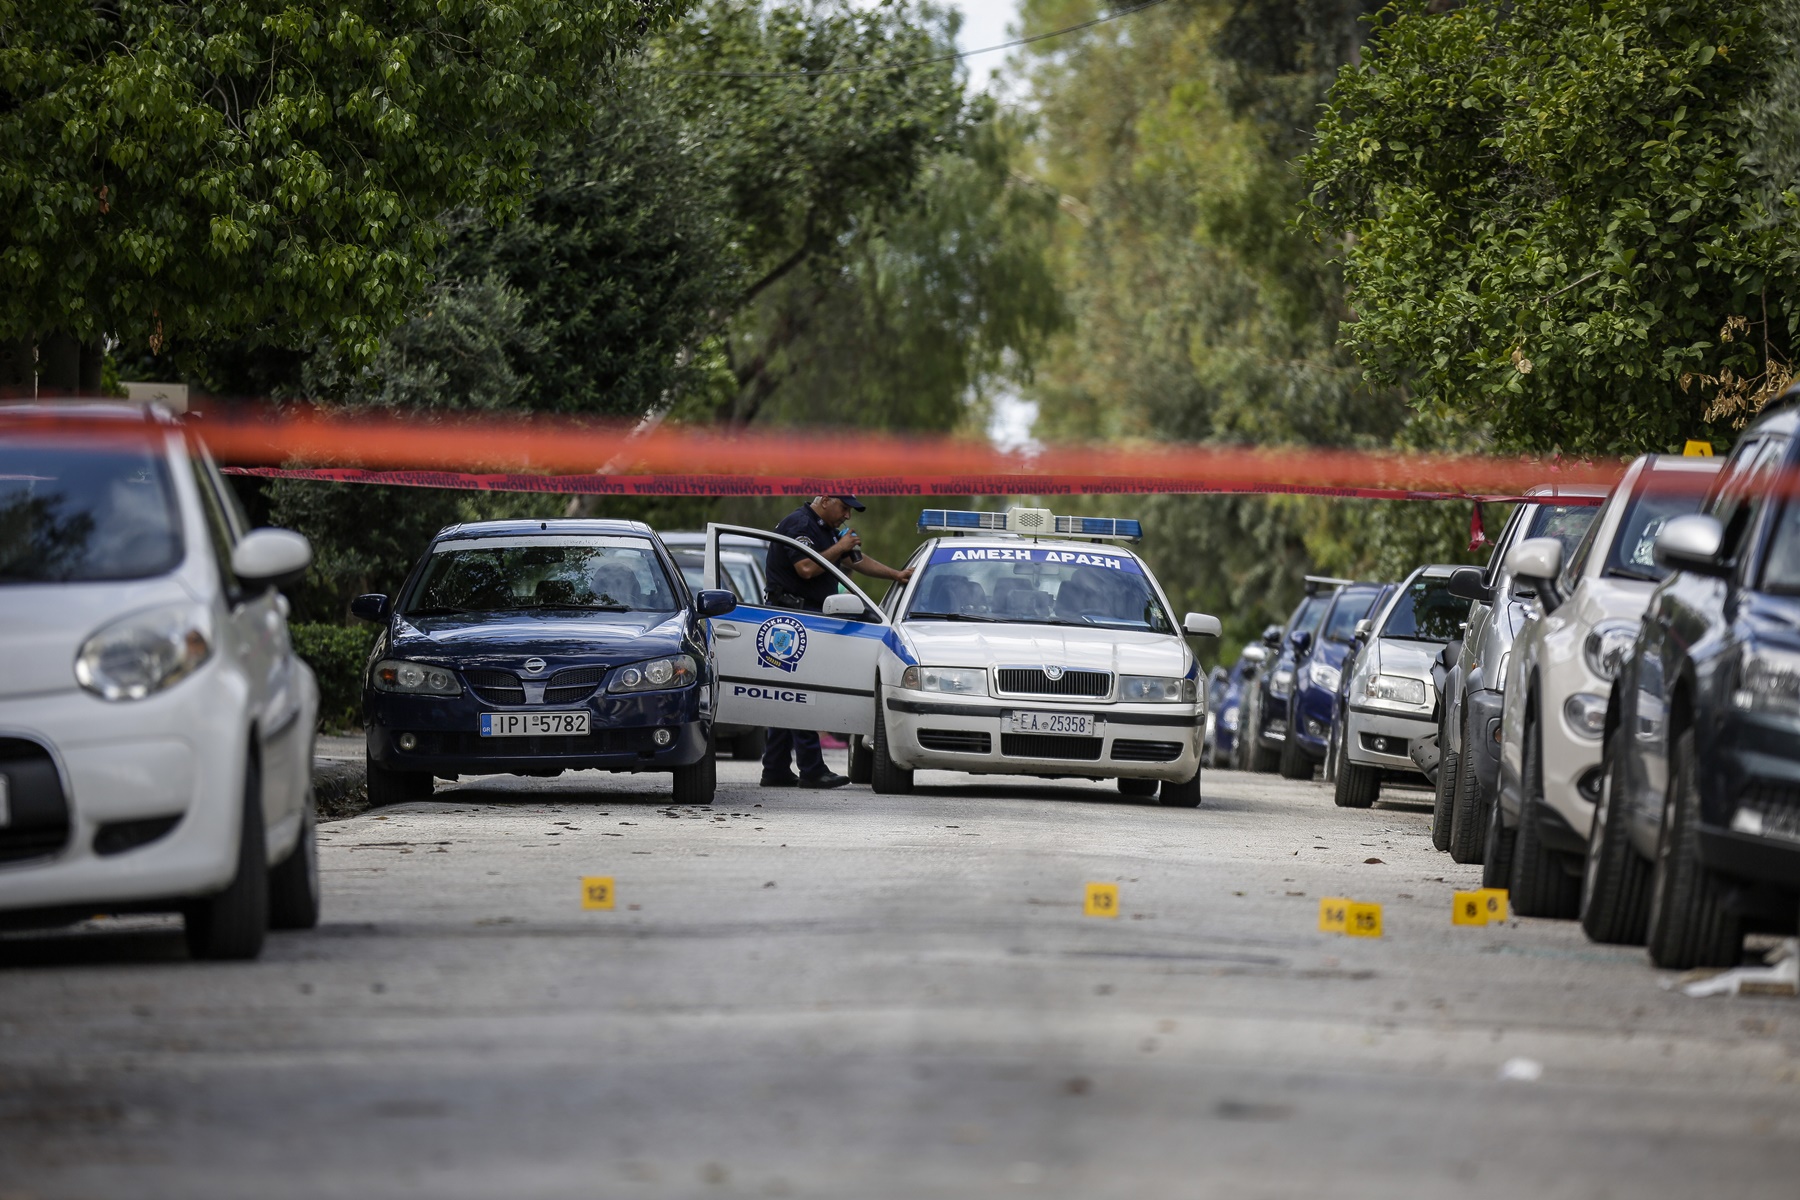 Νέα Σμύρνη πυροβολισμοί: Δύο νεκροί και μία τραυματίας